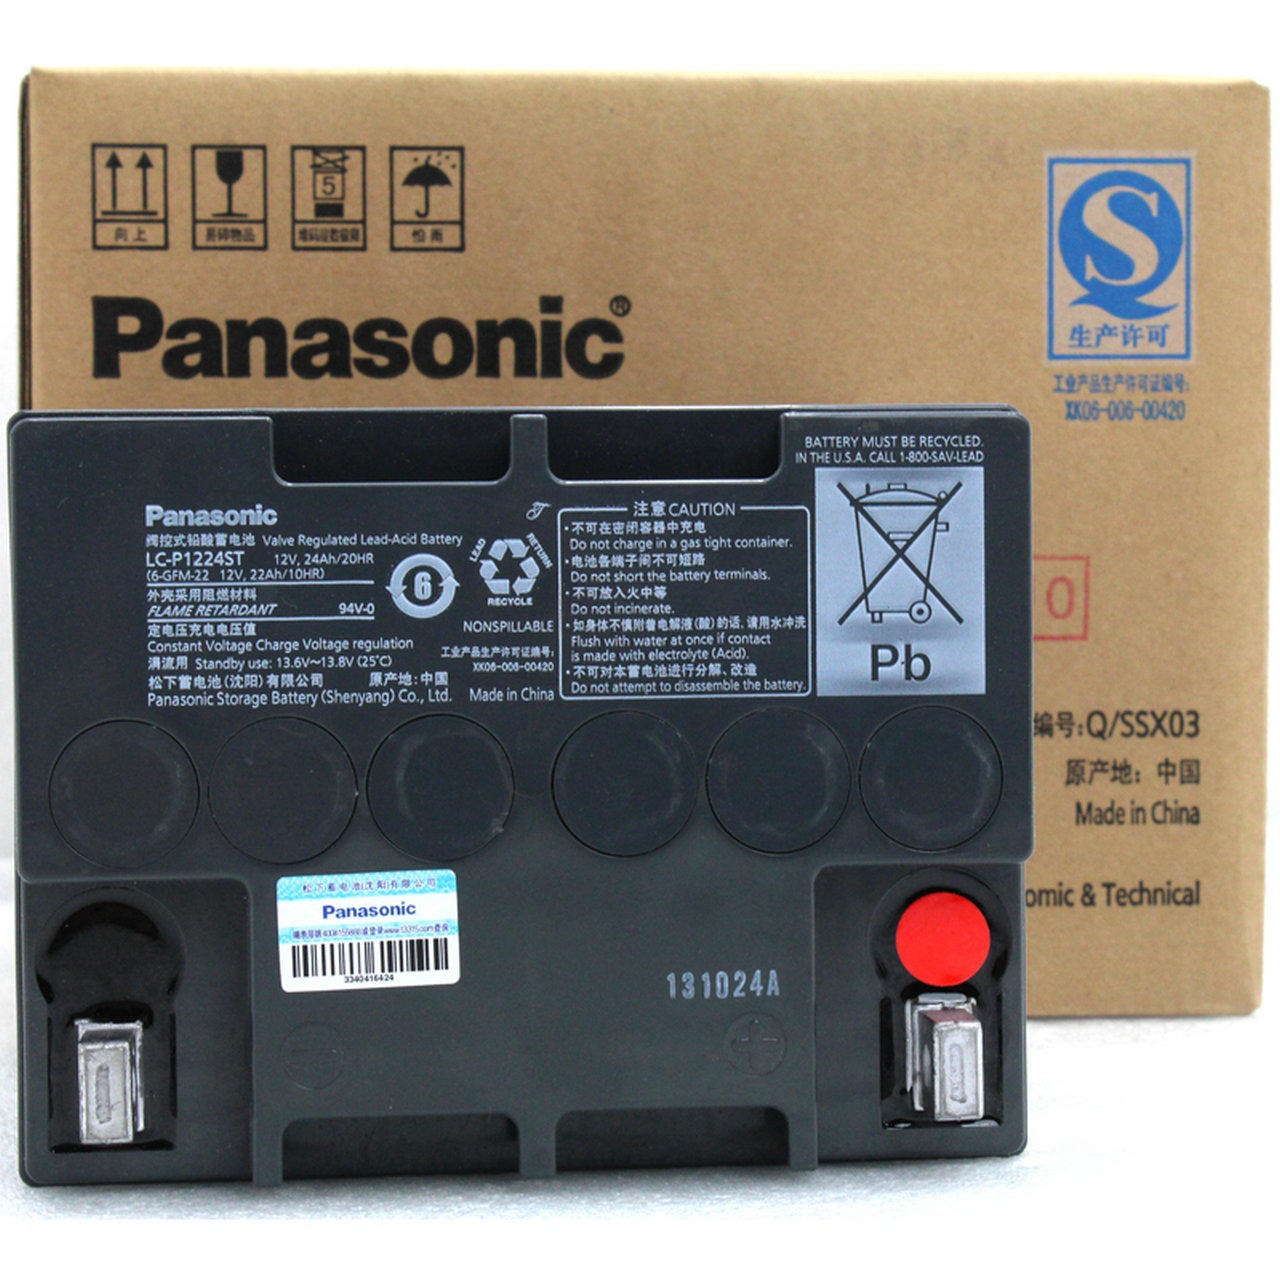 Panasonic松下蓄电池LC-P1224ST 松下蓄电池铅酸免维护12V24AH UPS电源,EPS直流屏,电力专用